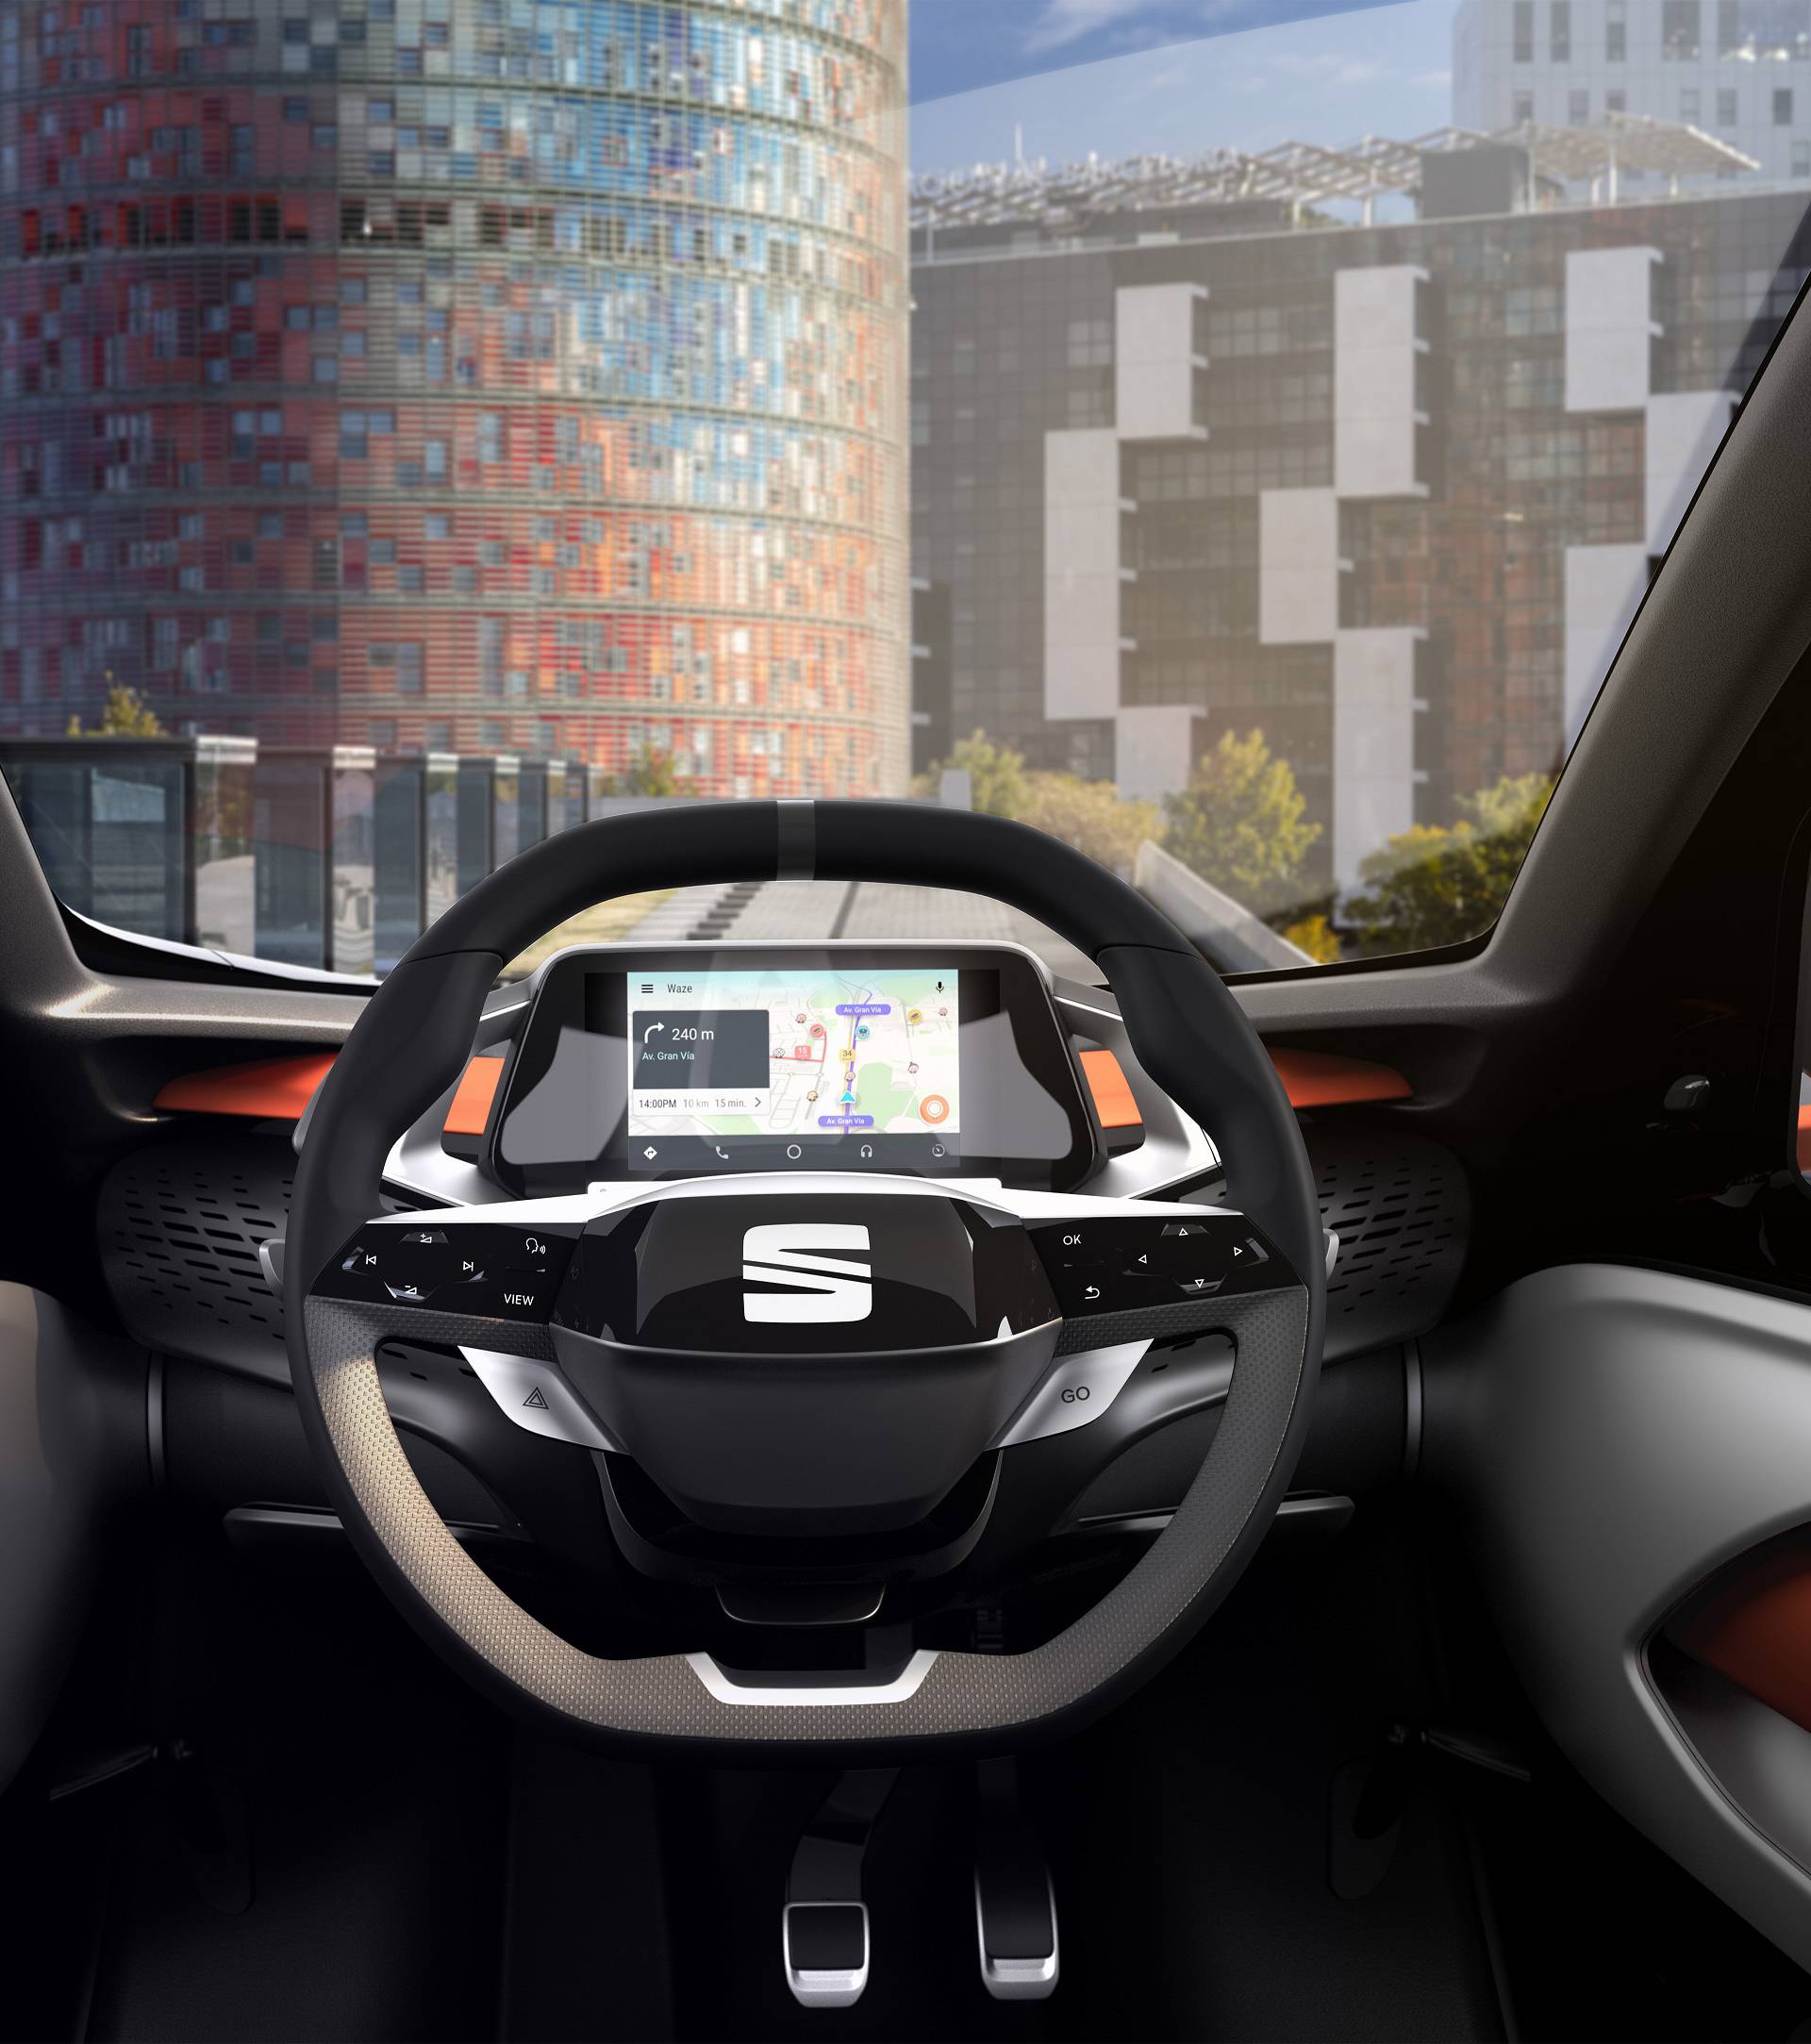 Seat budućnosti: Minimo čita godine vozača i limitira brzinu